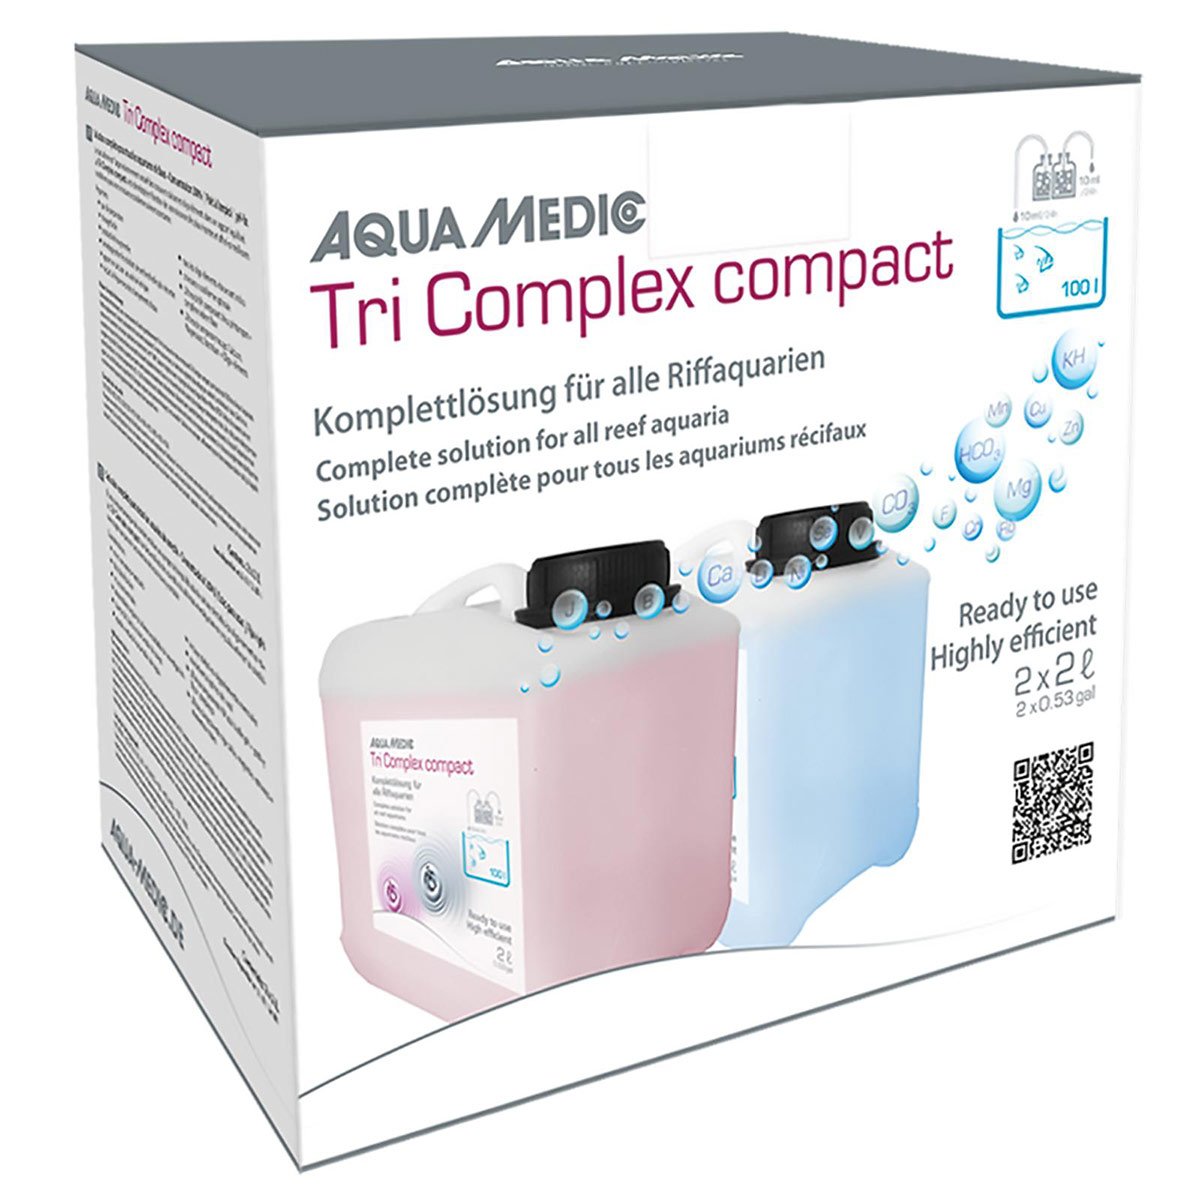 Aqua Medic Tri Complex Compact 2 × 5 l